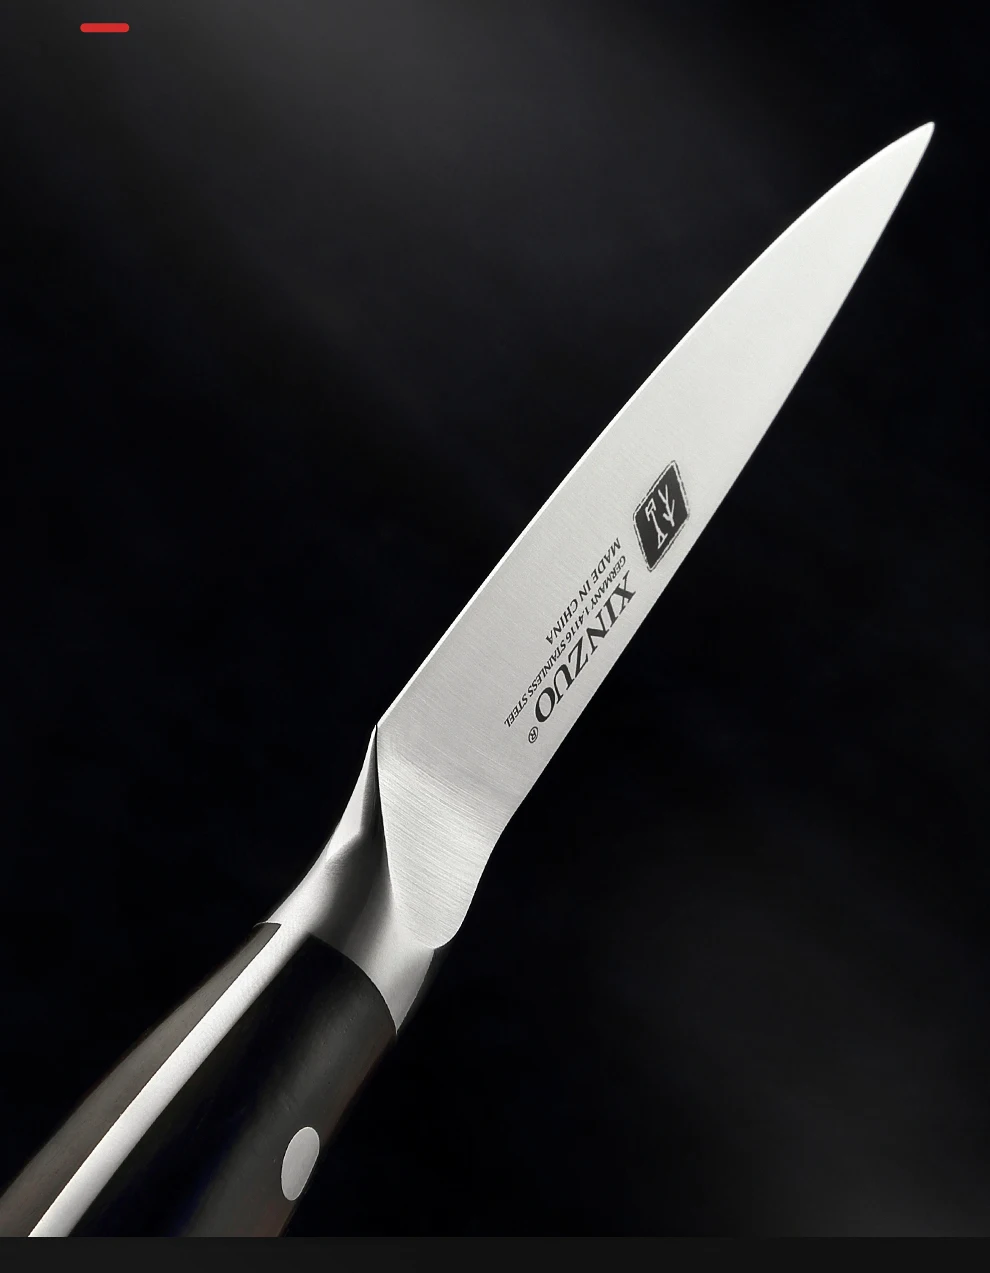 xinzuo faca de cozinha ergonômica alemanha faca de cozinha profissional em aço inoxidável com cabo ergonômico para polegadas